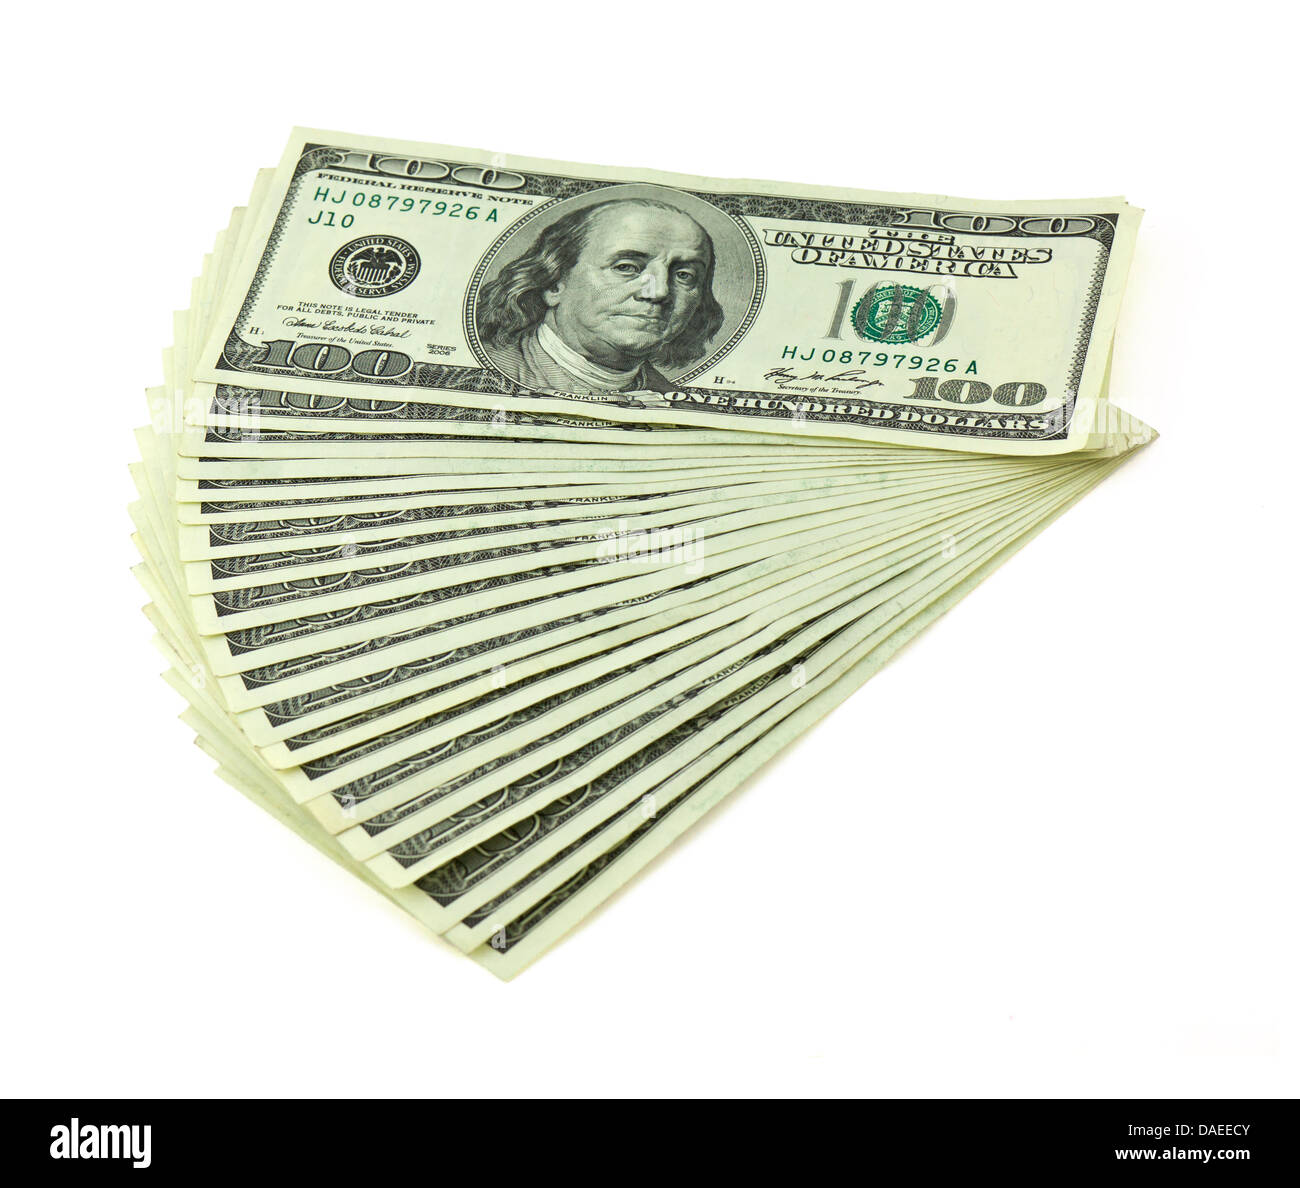 US dollars isolated on white Stock Photo